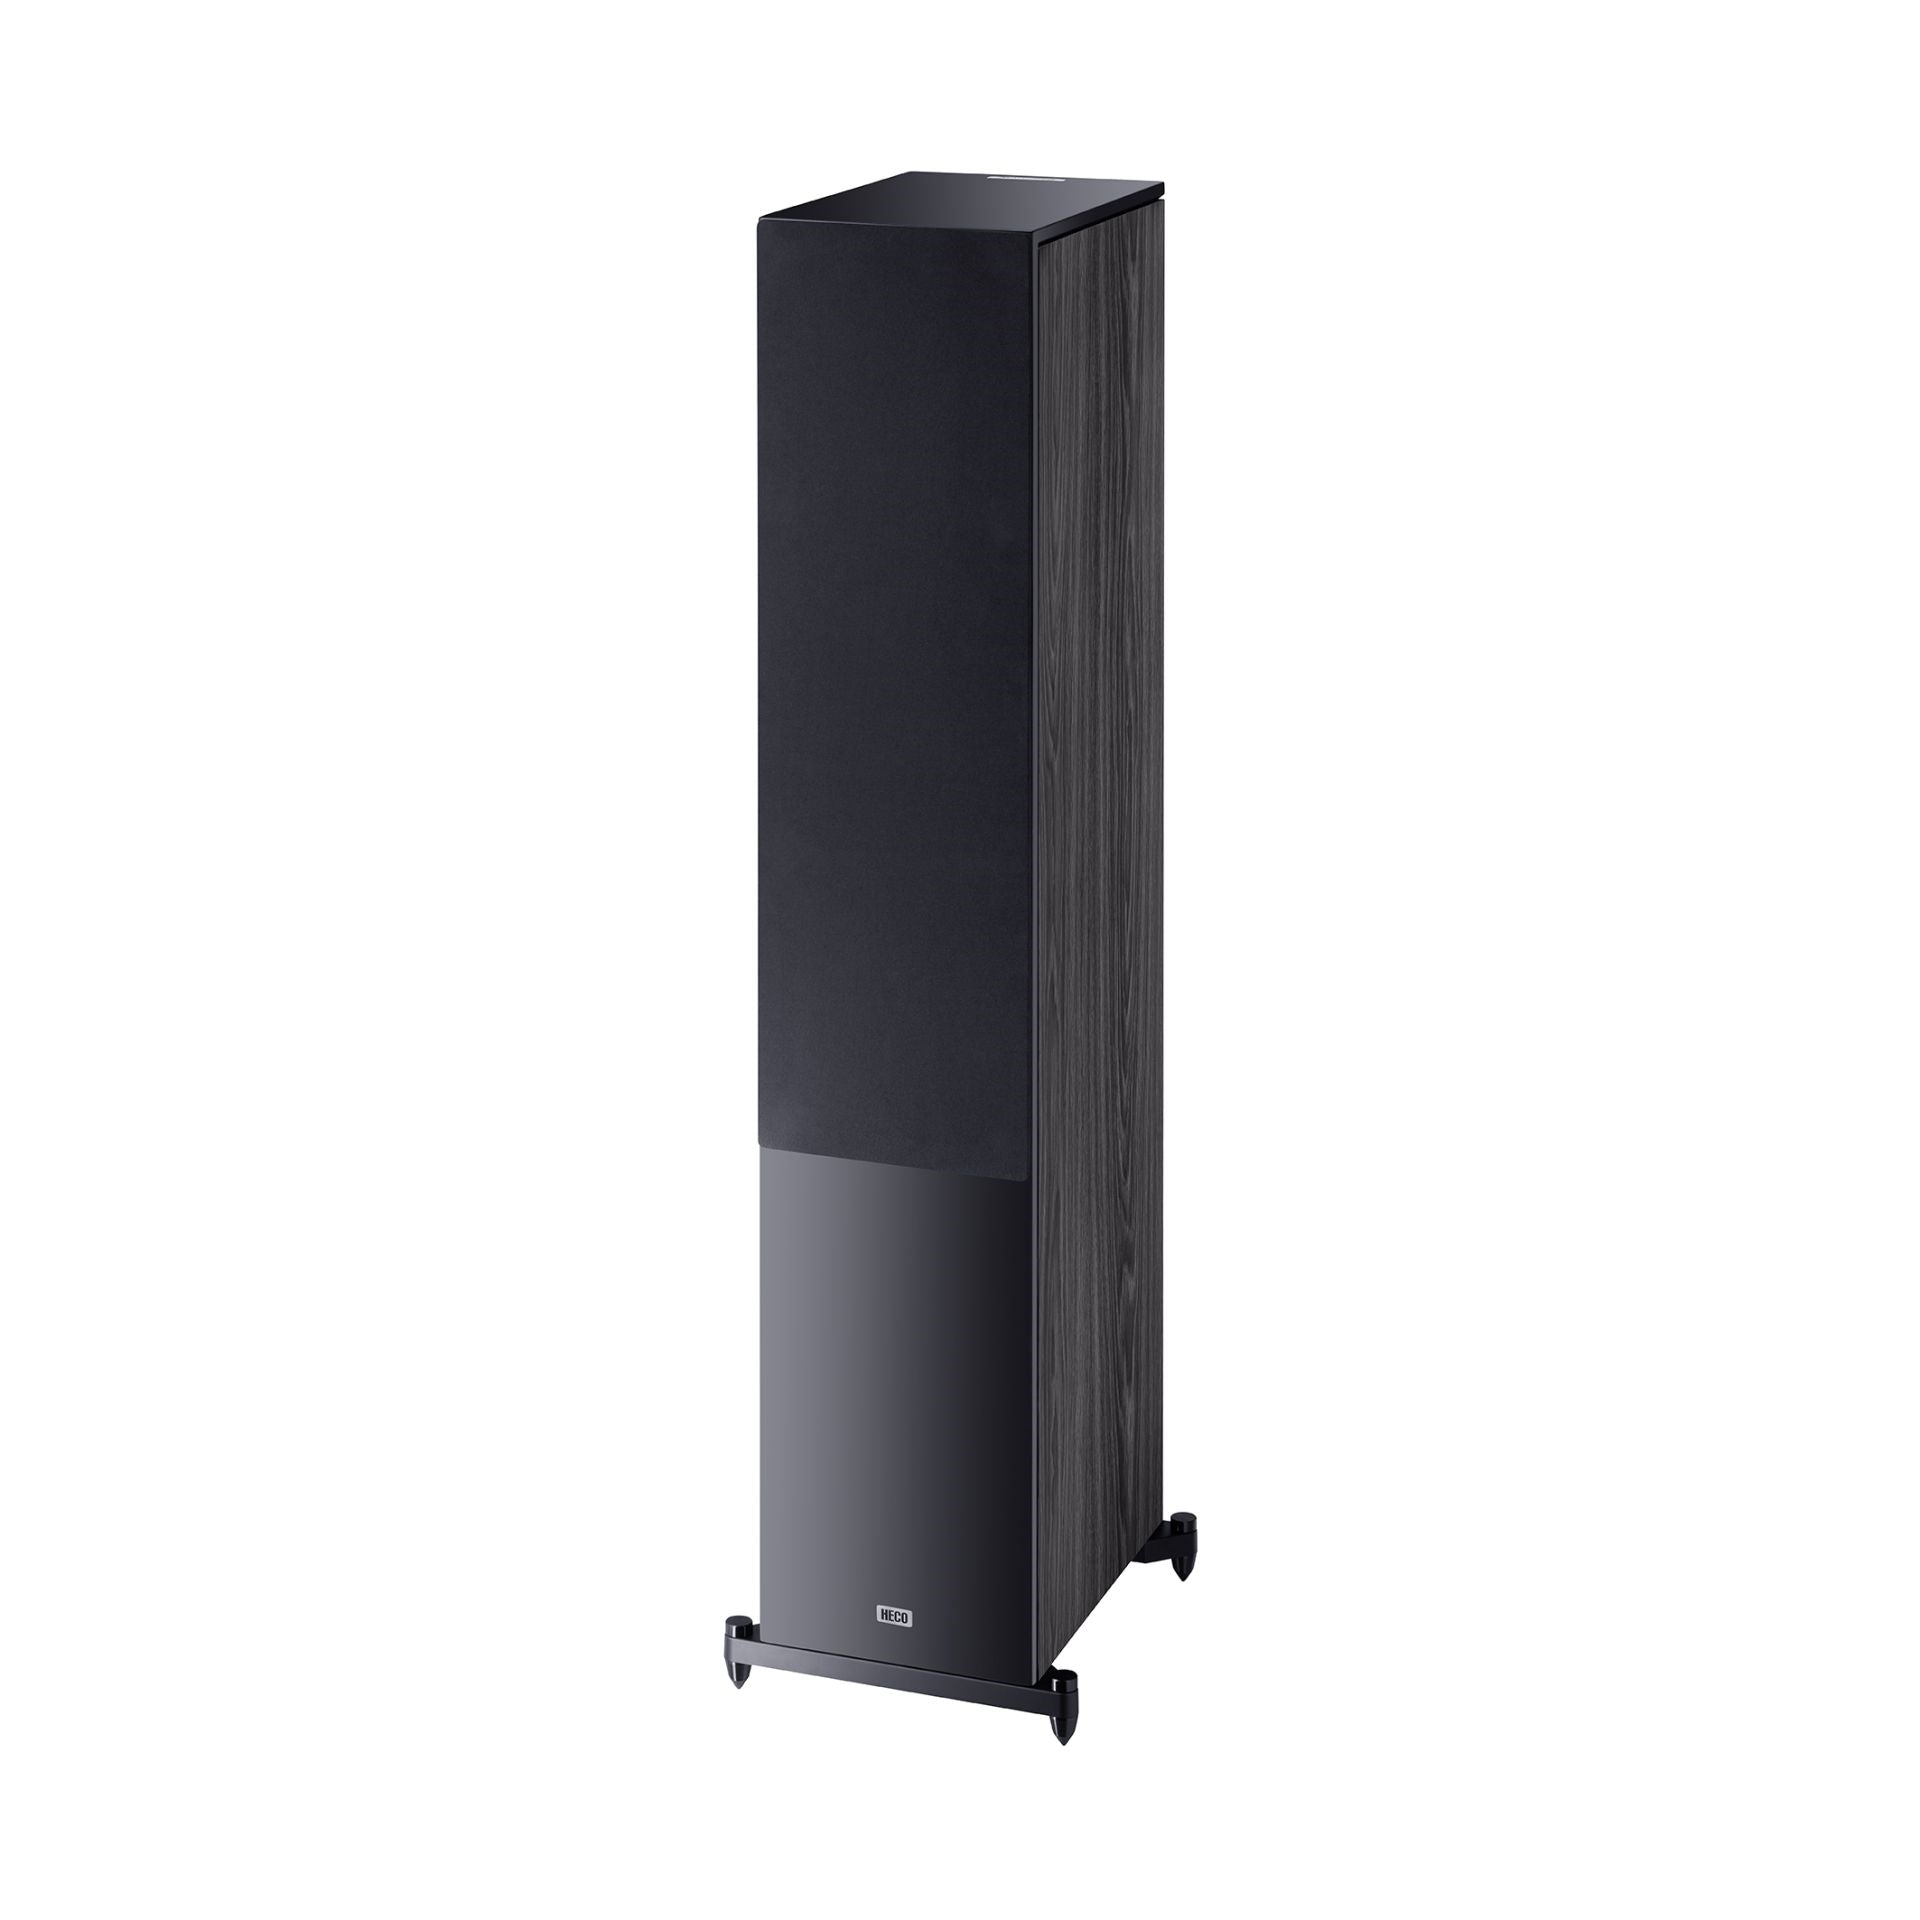 Heco Aurora 1000 Floorstanding Speakers Black